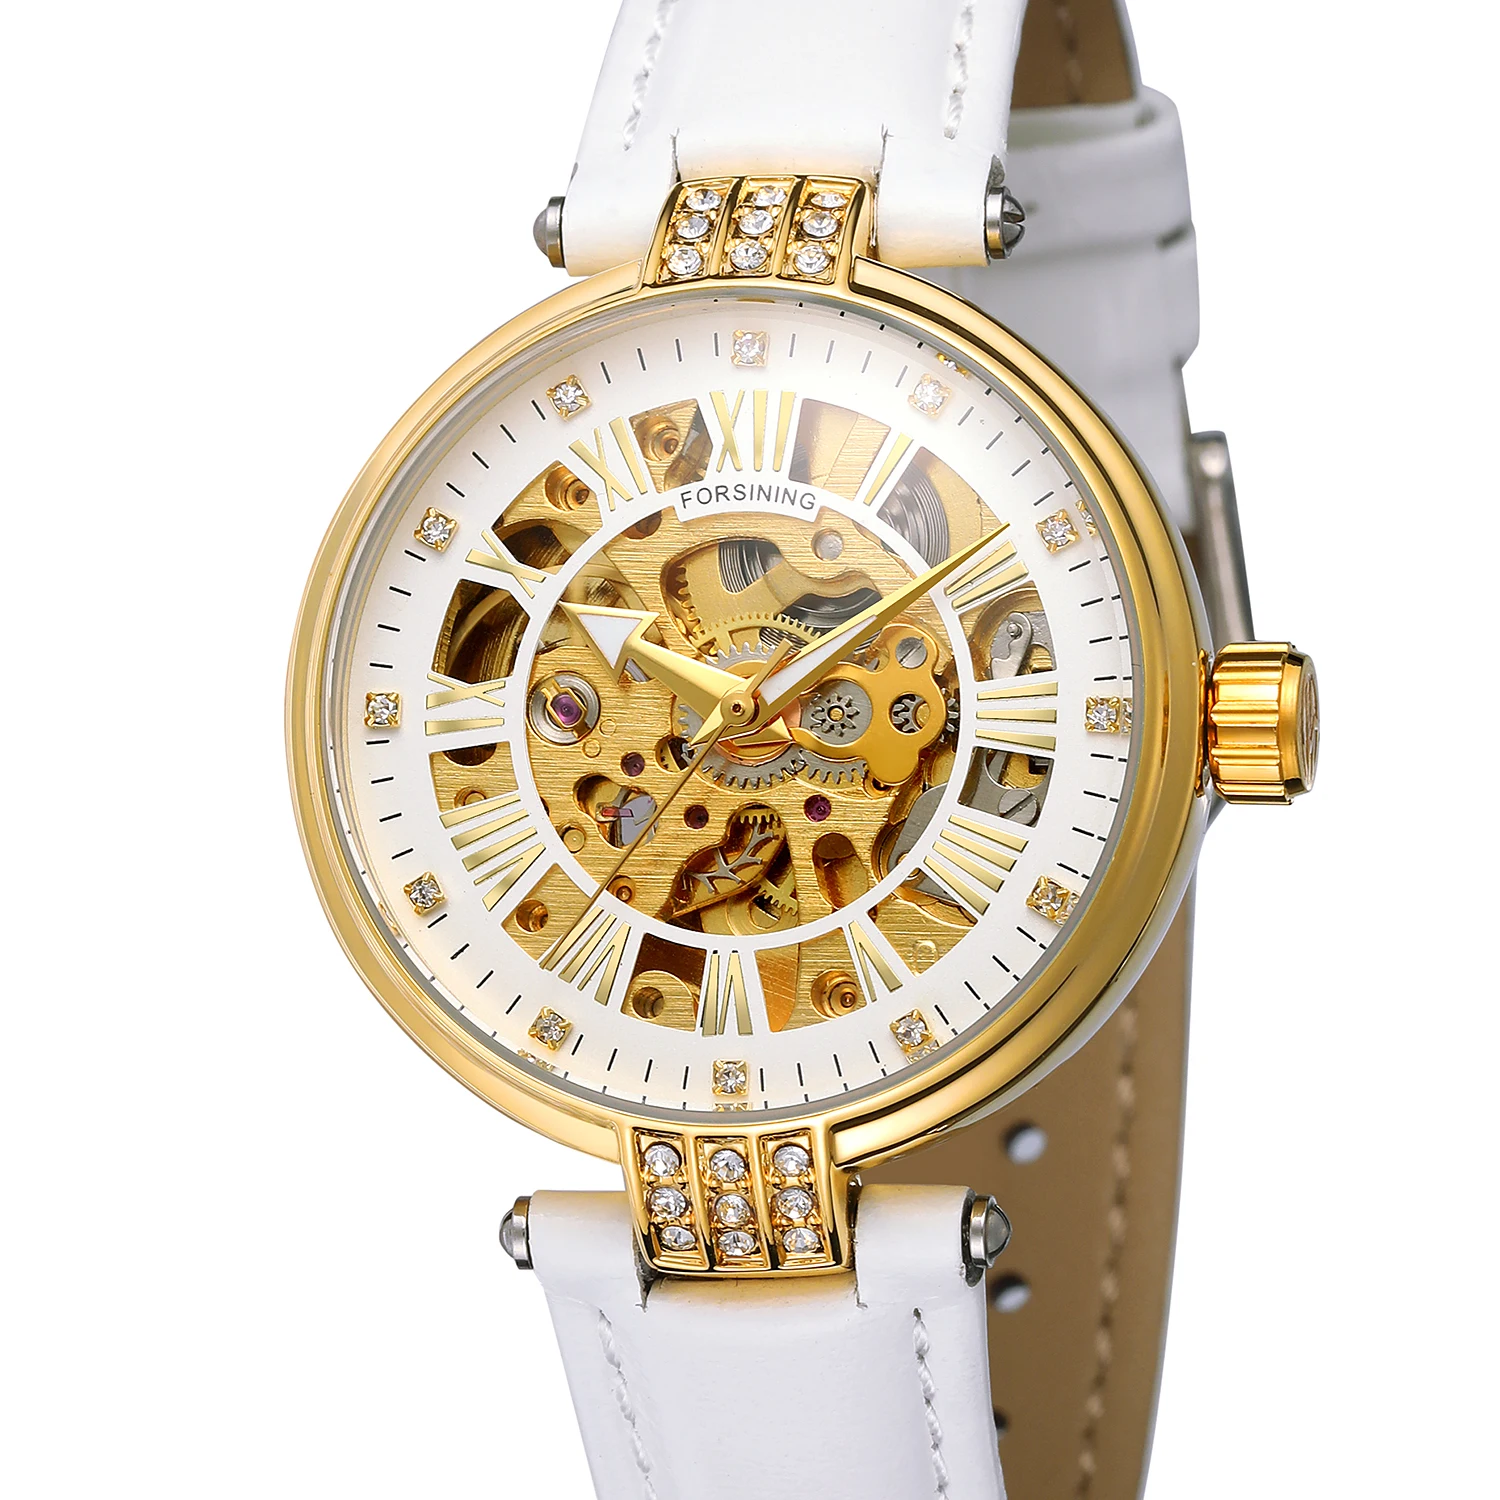 Женские часы Механические наручные часы женские часы со стразами белый женский кожаный браслет часы со скелетом автоматические часы